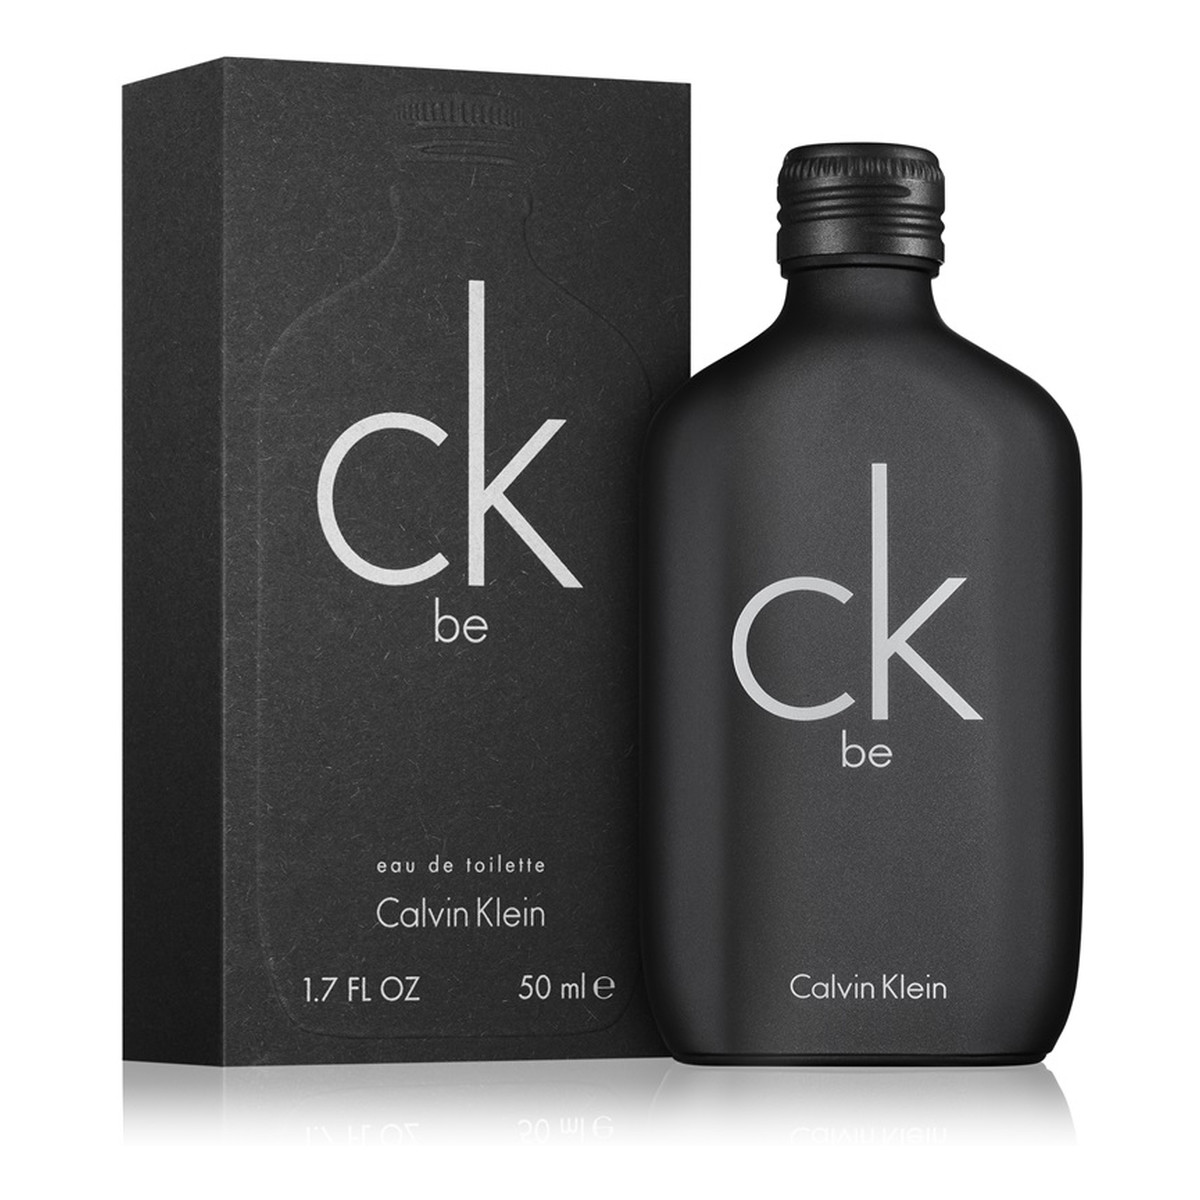 Calvin Klein CK Be woda toaletowa unisex 50ml